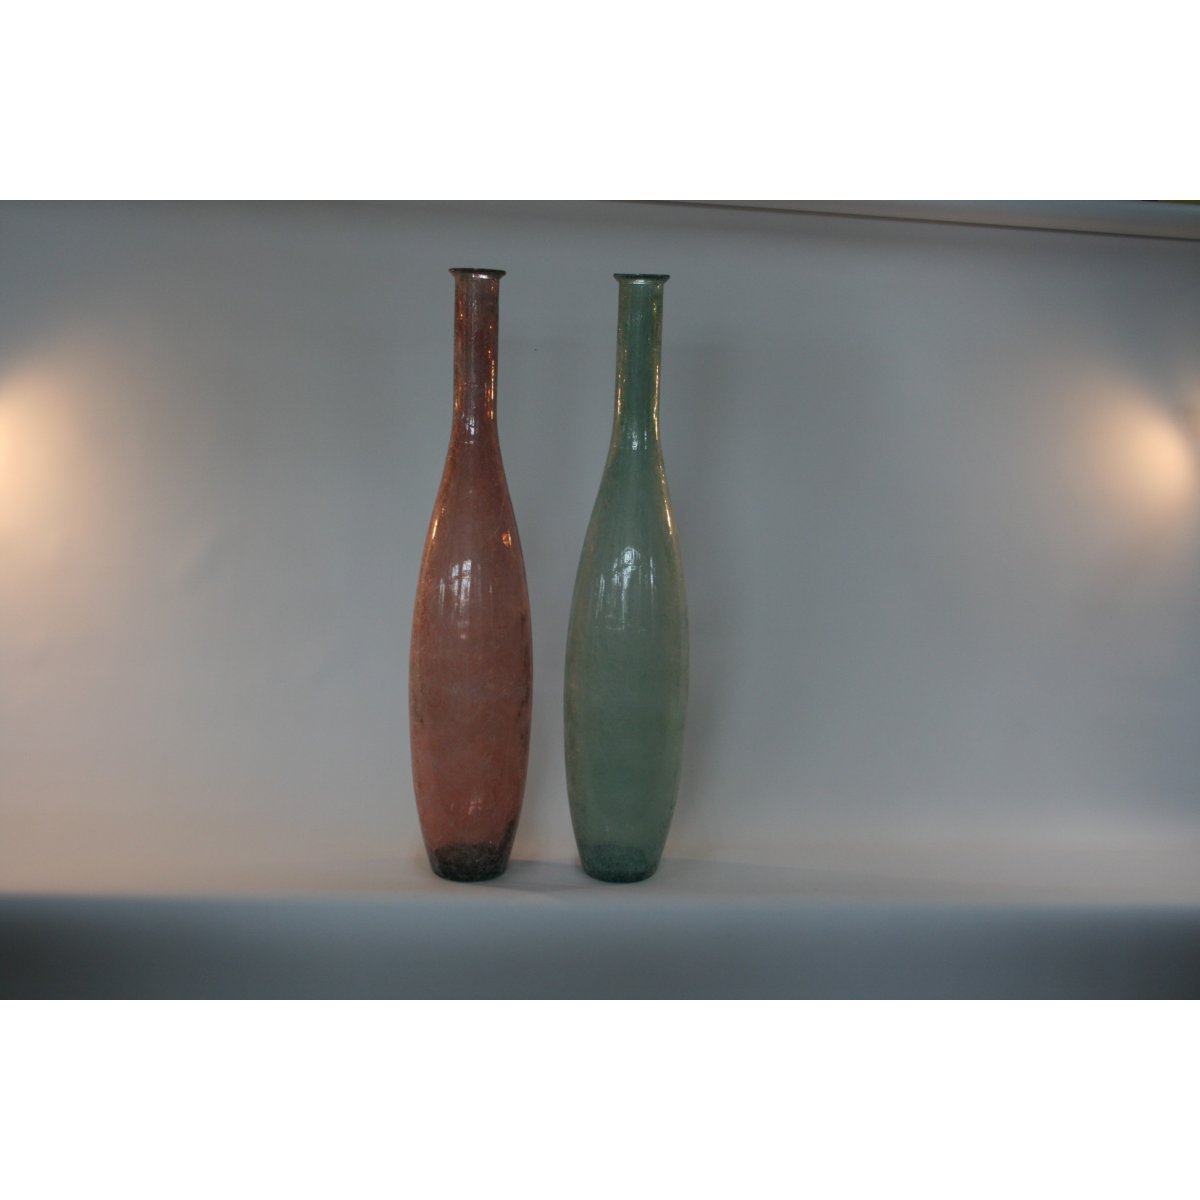 bottiglie modello Seta VT colore verde mare e rosa cipria